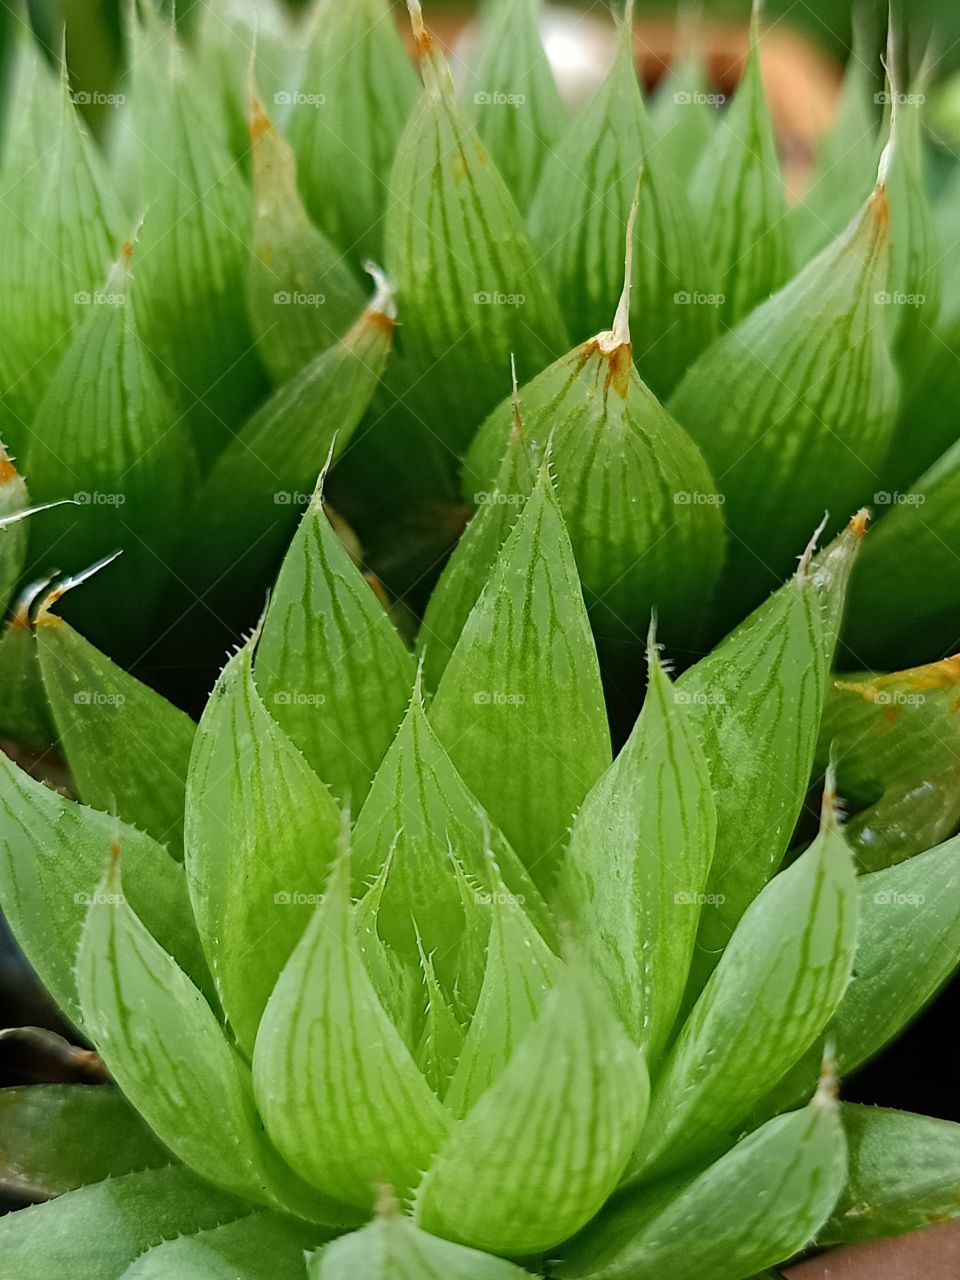 Green little plants